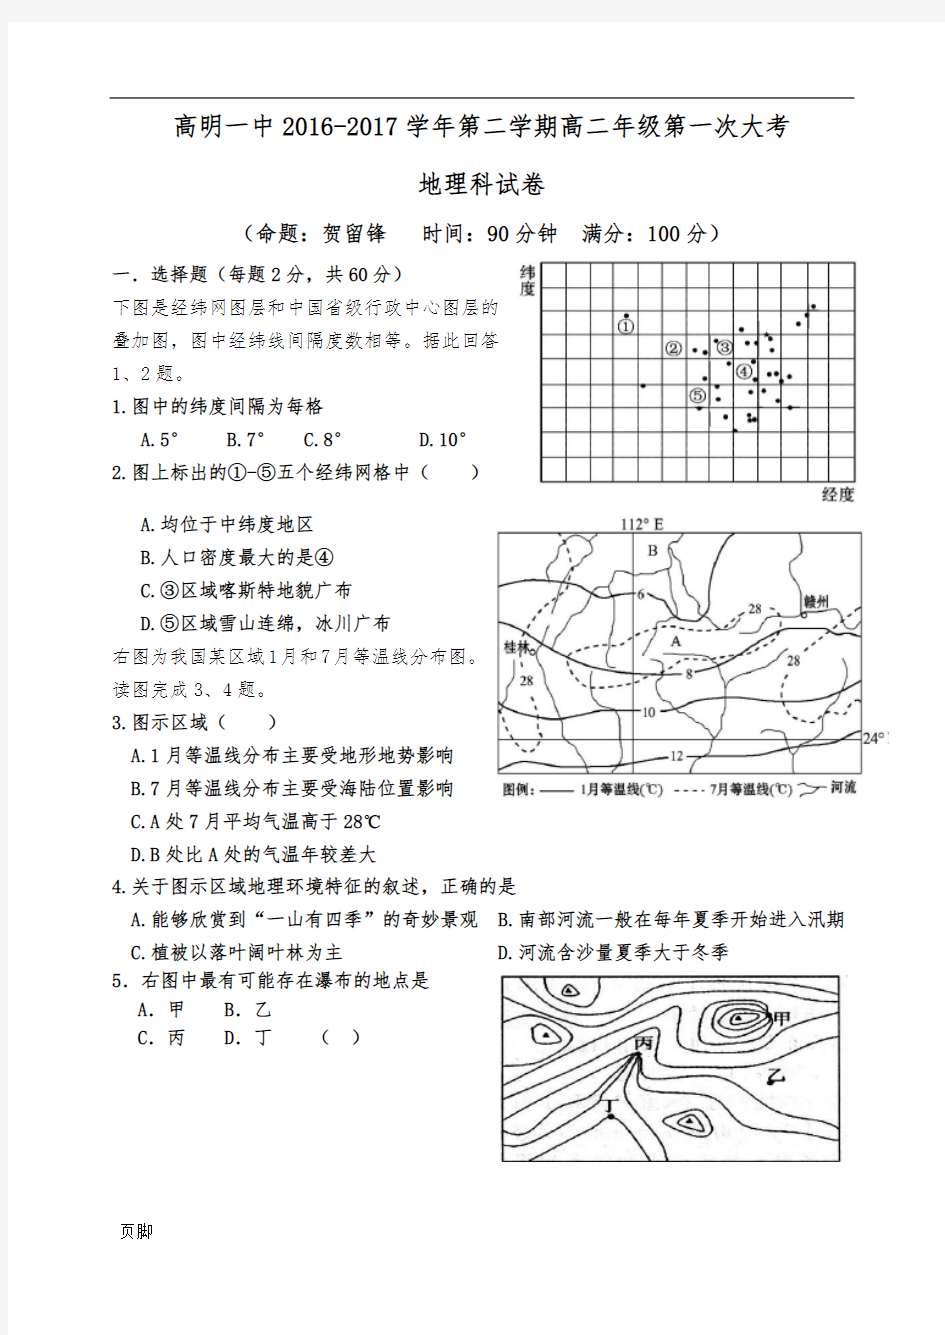 高二下学期一次大考地理试题(区域地理+世界地理概况+中国地理)